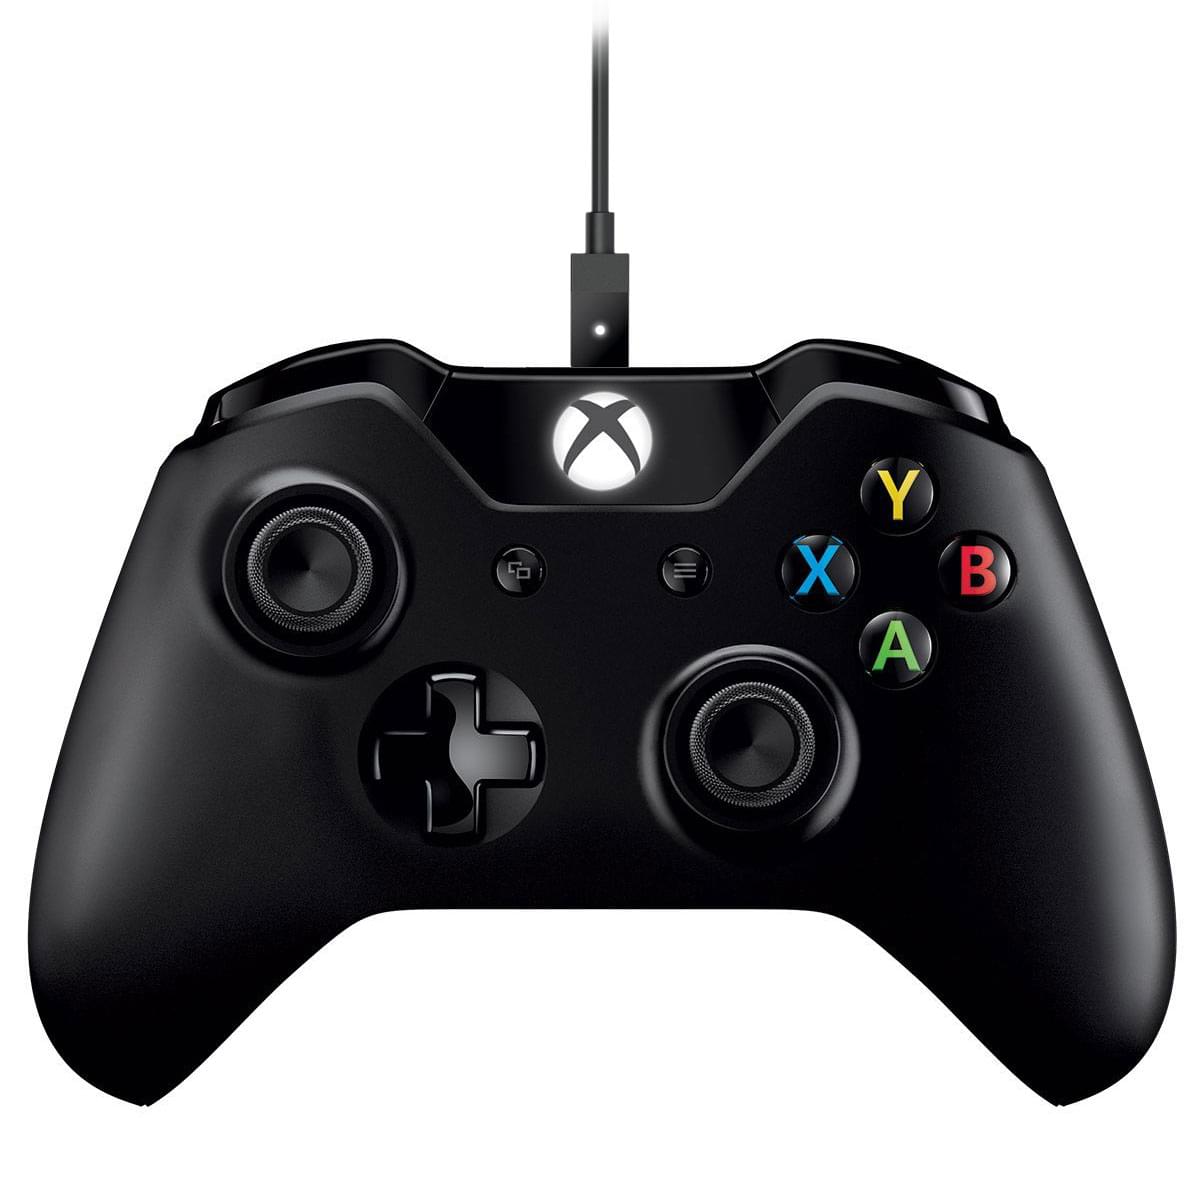 Périphérique de jeu Microsoft Manette Xbox One sans fil + Cable pour PC